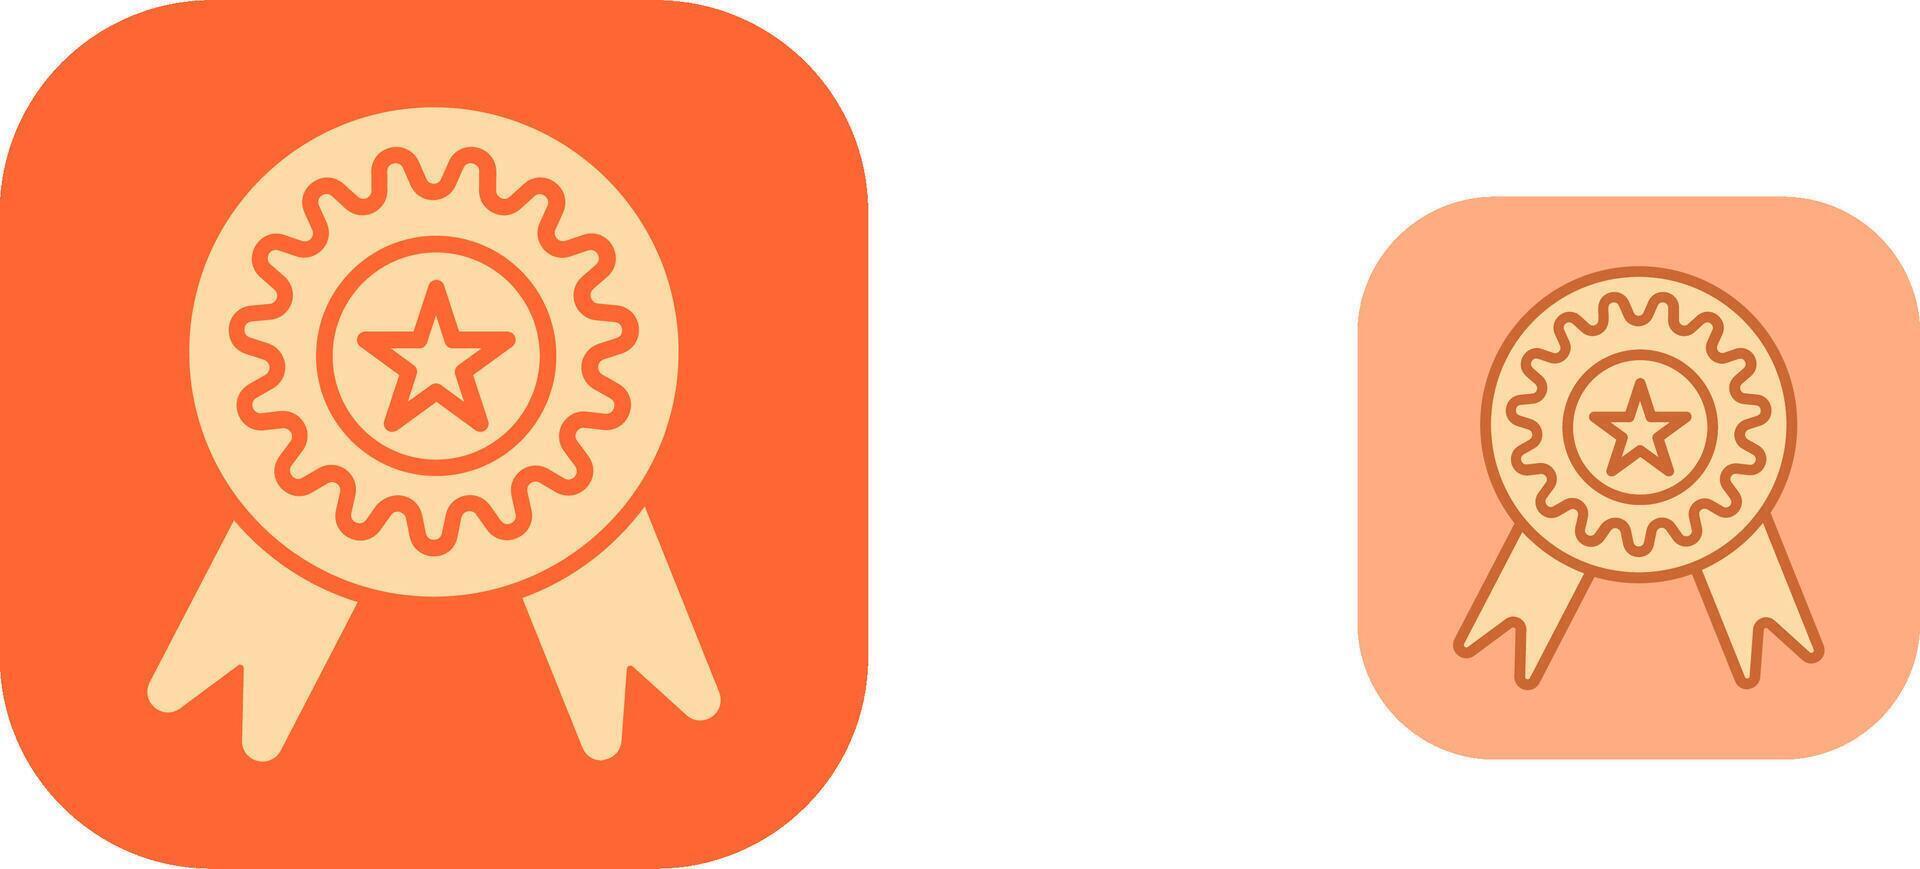 Awards Icon Design vector